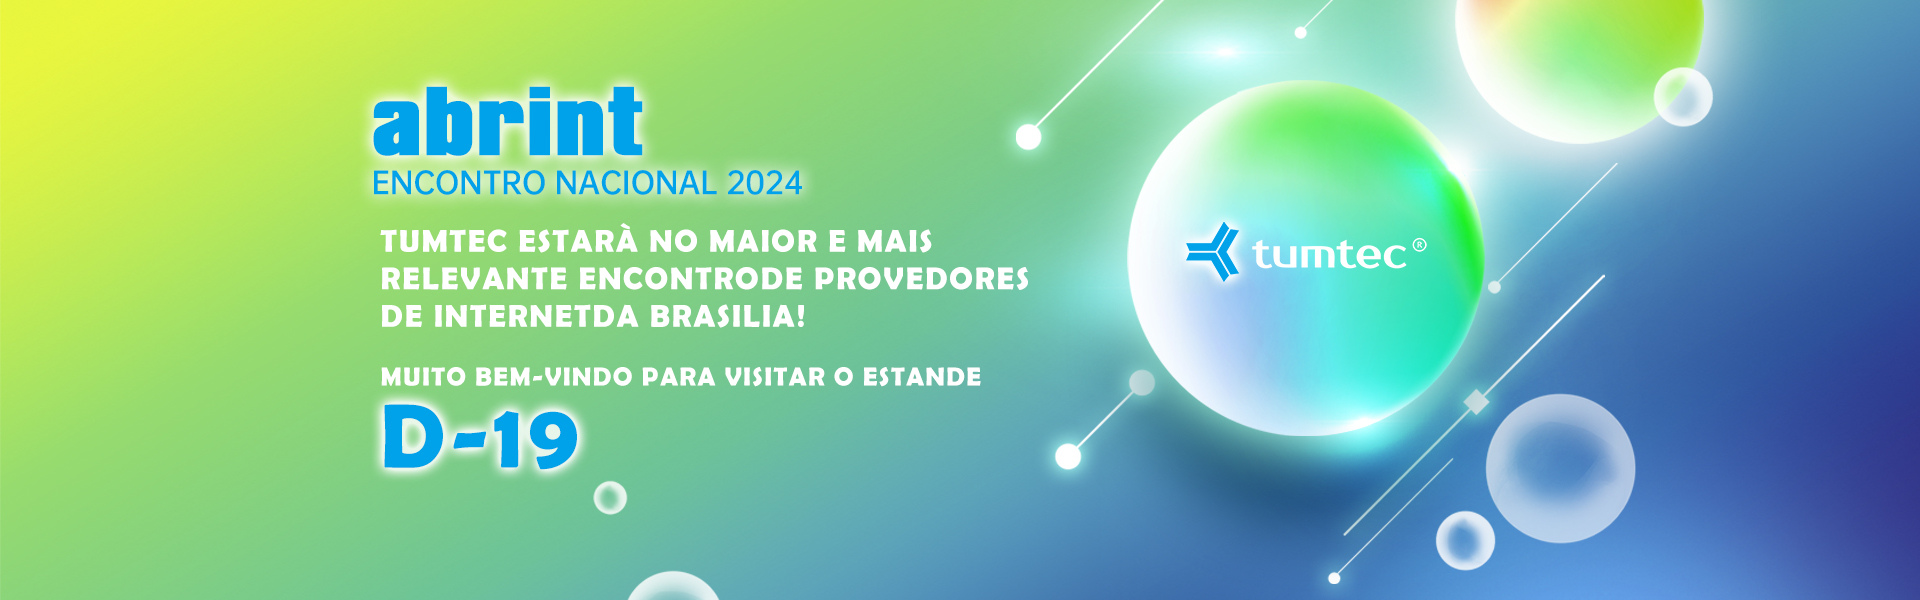 Abrint é a feira de telecomunicações mais profissional do Brasil. A Tumtec estará presente com seu recém-lançado splicer de fusão e cutelos de fibra.